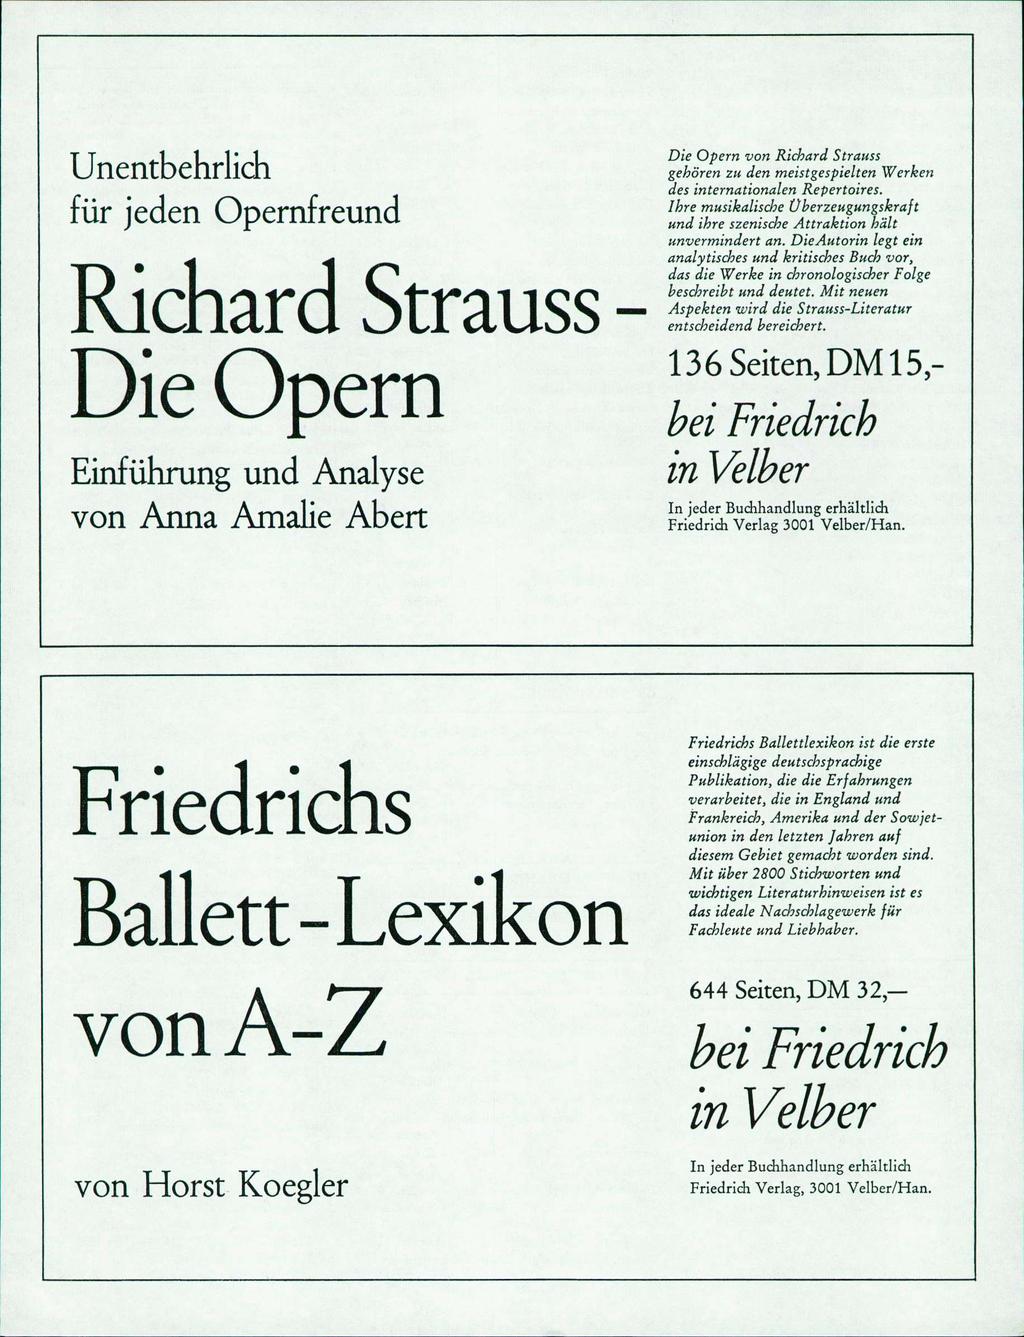 Unentbehrlich für jeden Opernfreund Richard Strauss - Die Opern Einführung und Analyse von Anna Amalie Abert Die Opern von Richard Strauss gehören zu.